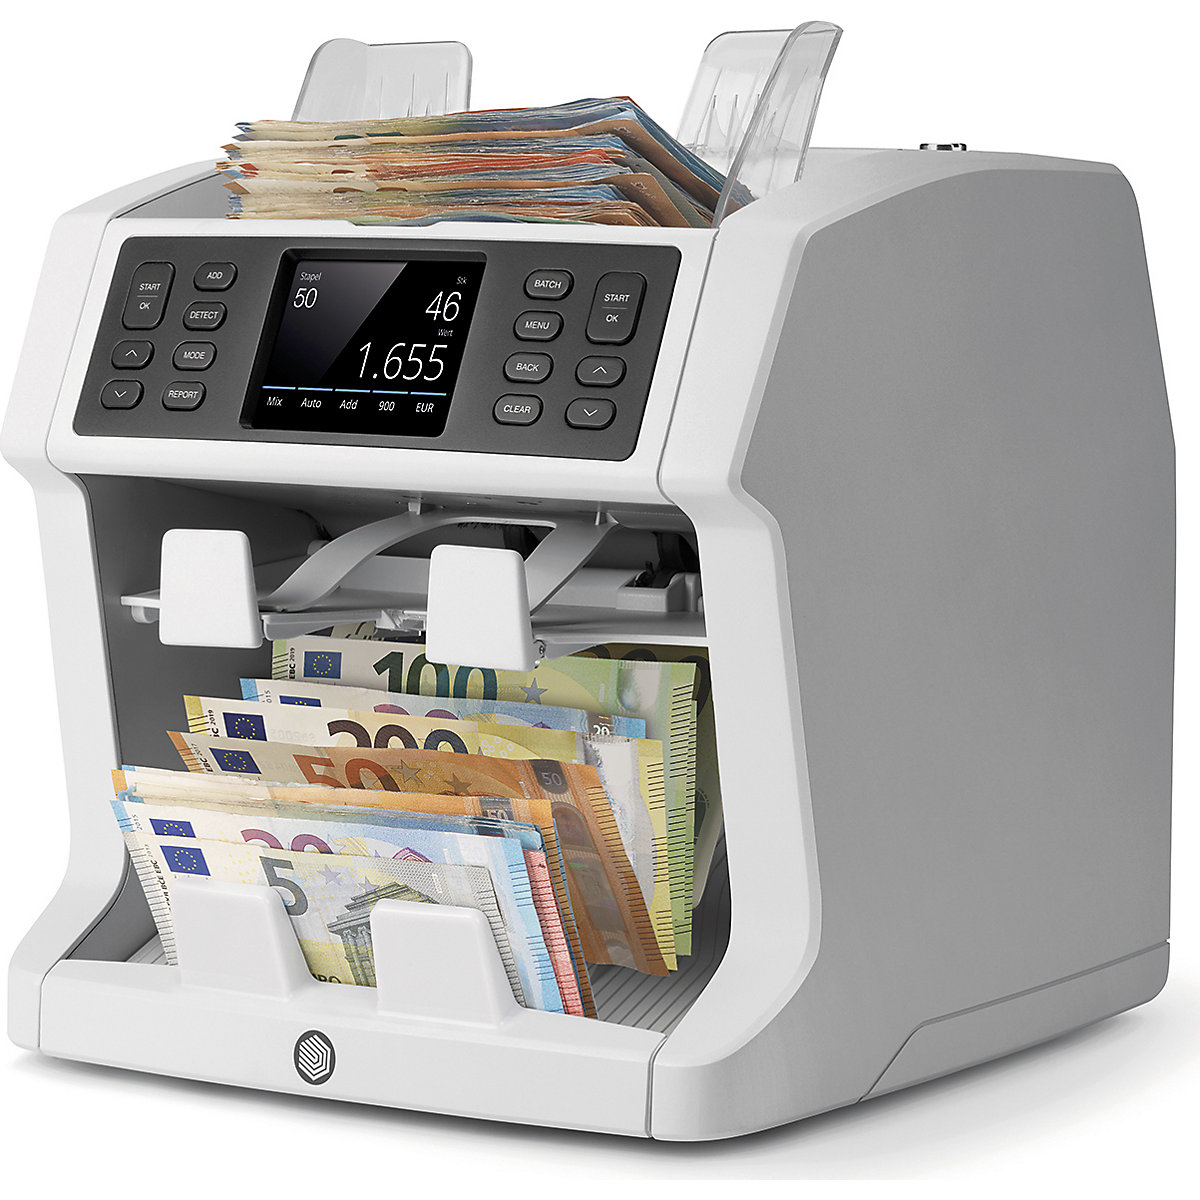 Rilevatore Banconote False Archivi - Controlla e Verifica Banconote -  Conteggio contante Automatico